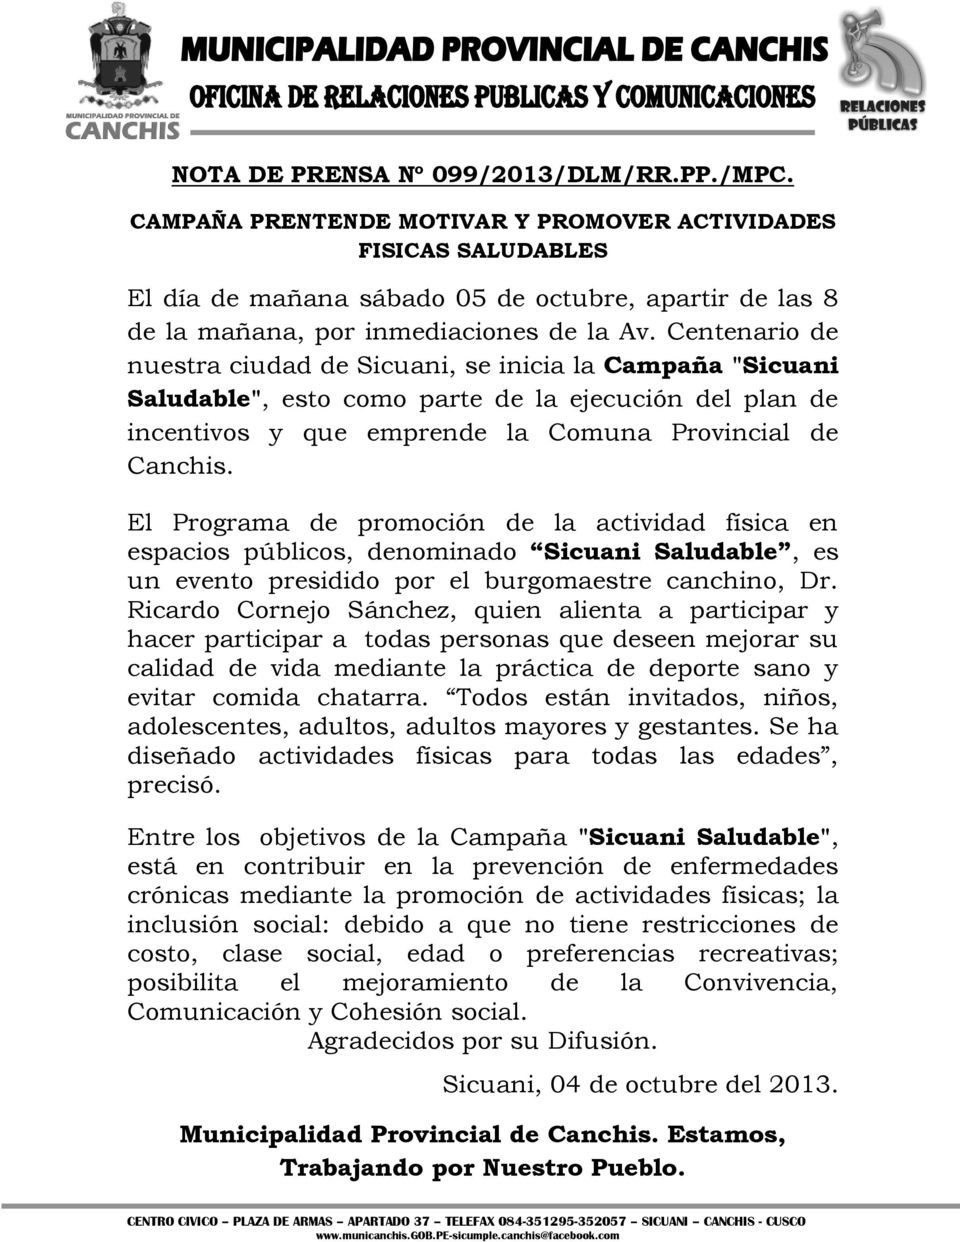 Centenario de nuestra ciudad de Sicuani, se inicia la Campaña "Sicuani Saludable", esto como parte de la ejecución del plan de incentivos y que emprende la Comuna Provincial de Canchis.